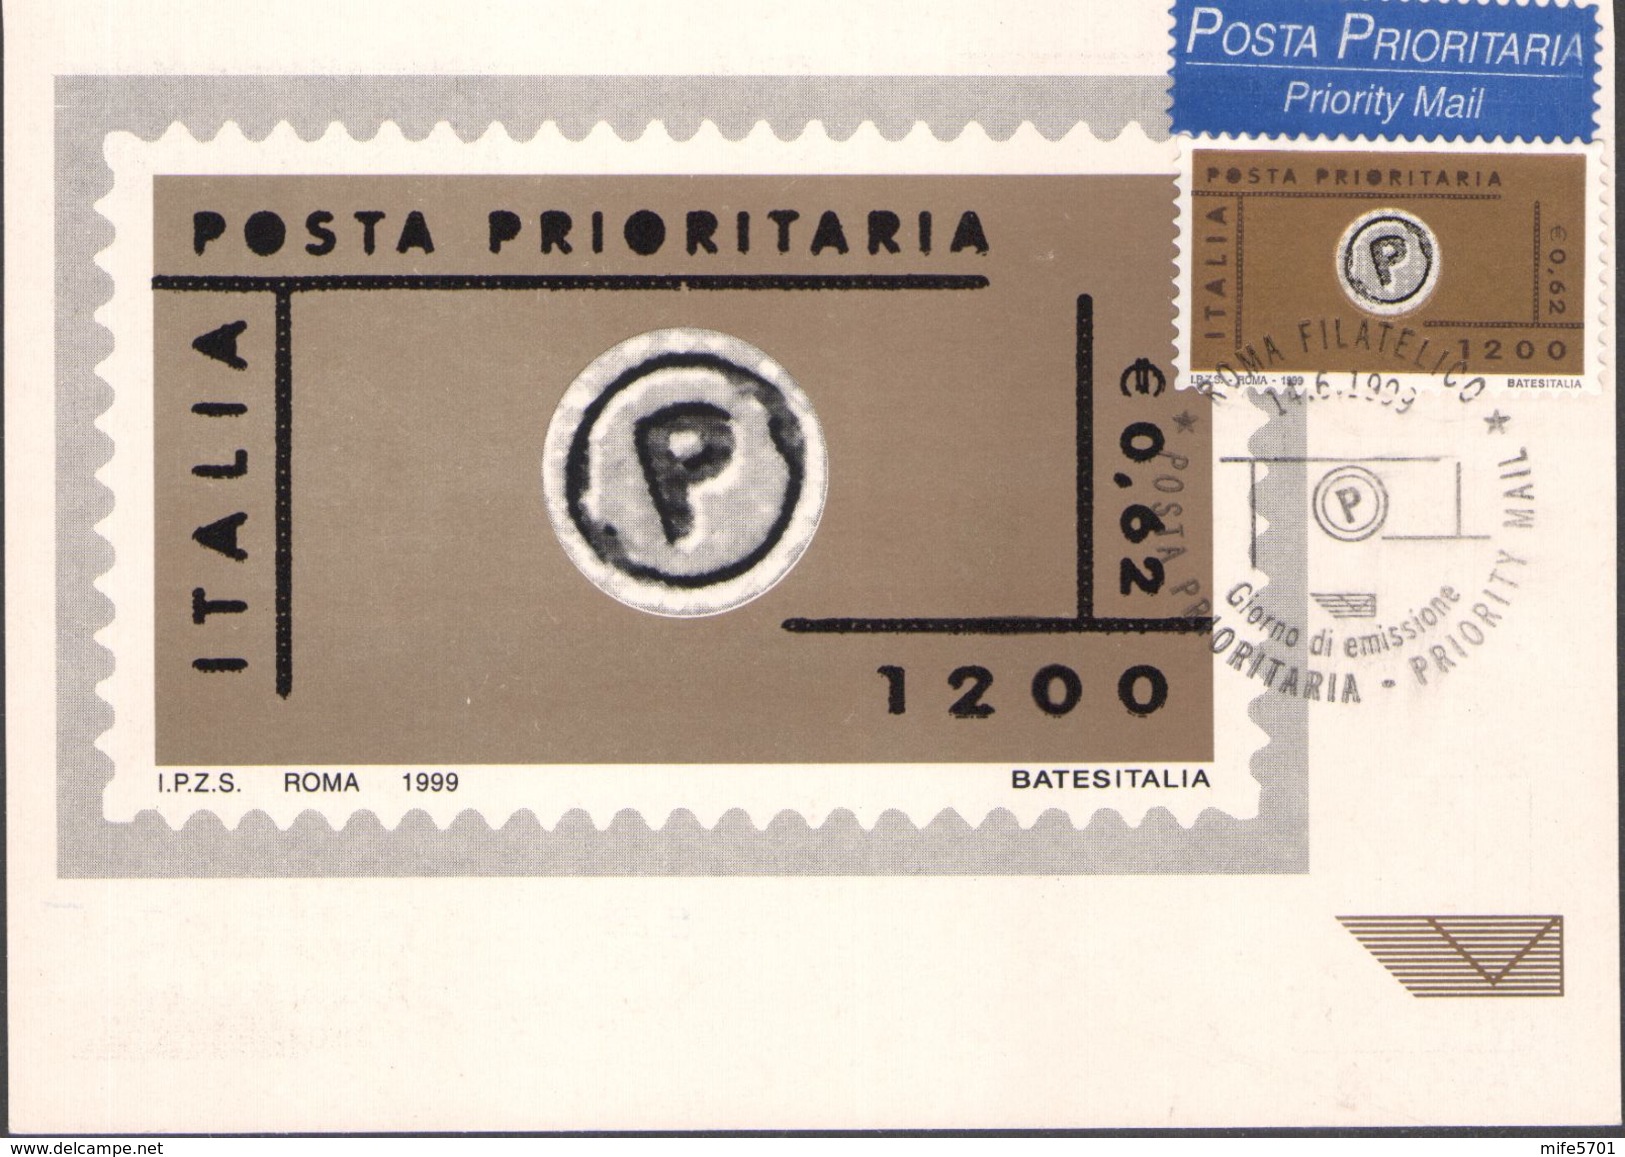 MAXCARD - CARTOLINA POSTA PRIORITARIA FRANCOBOLLO DA L. 1200 EURO 0,62 - 14.6.1999 - CATALOGO SASSONE: 2419 - FDC - Maximumkarten (MC)